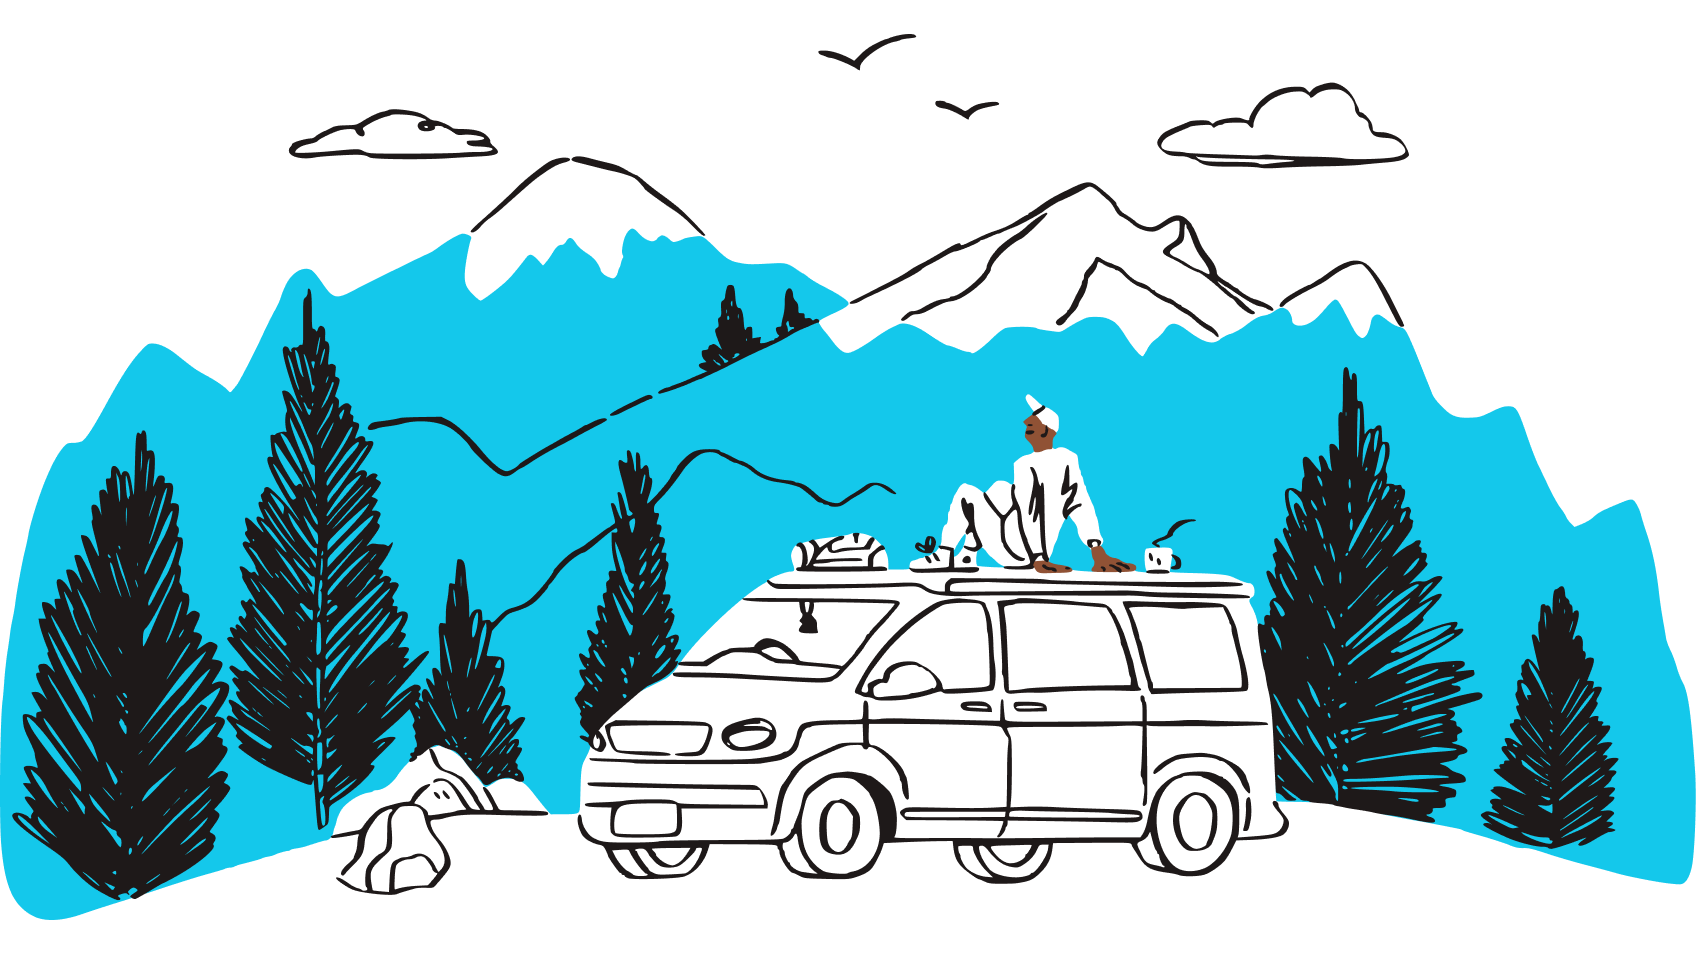 Een illustratie van een persoon die op het dak van een voertuig zit en het uitzicht op een bergketen bewondert.